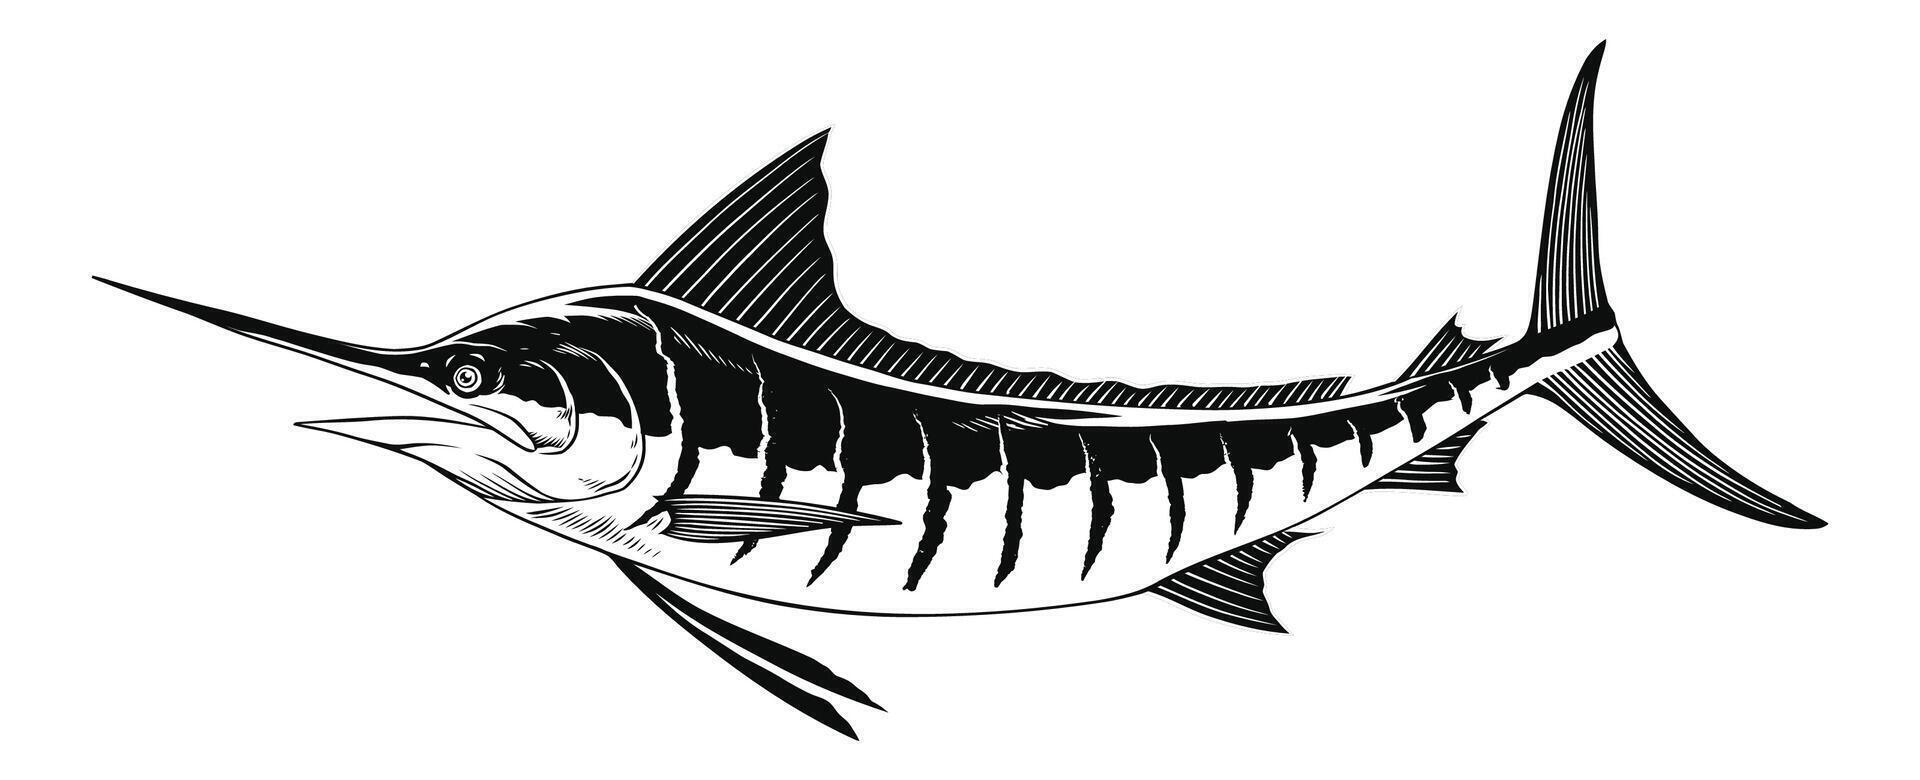 marlin poisson vecteurnoir et blanc illustration vecteur